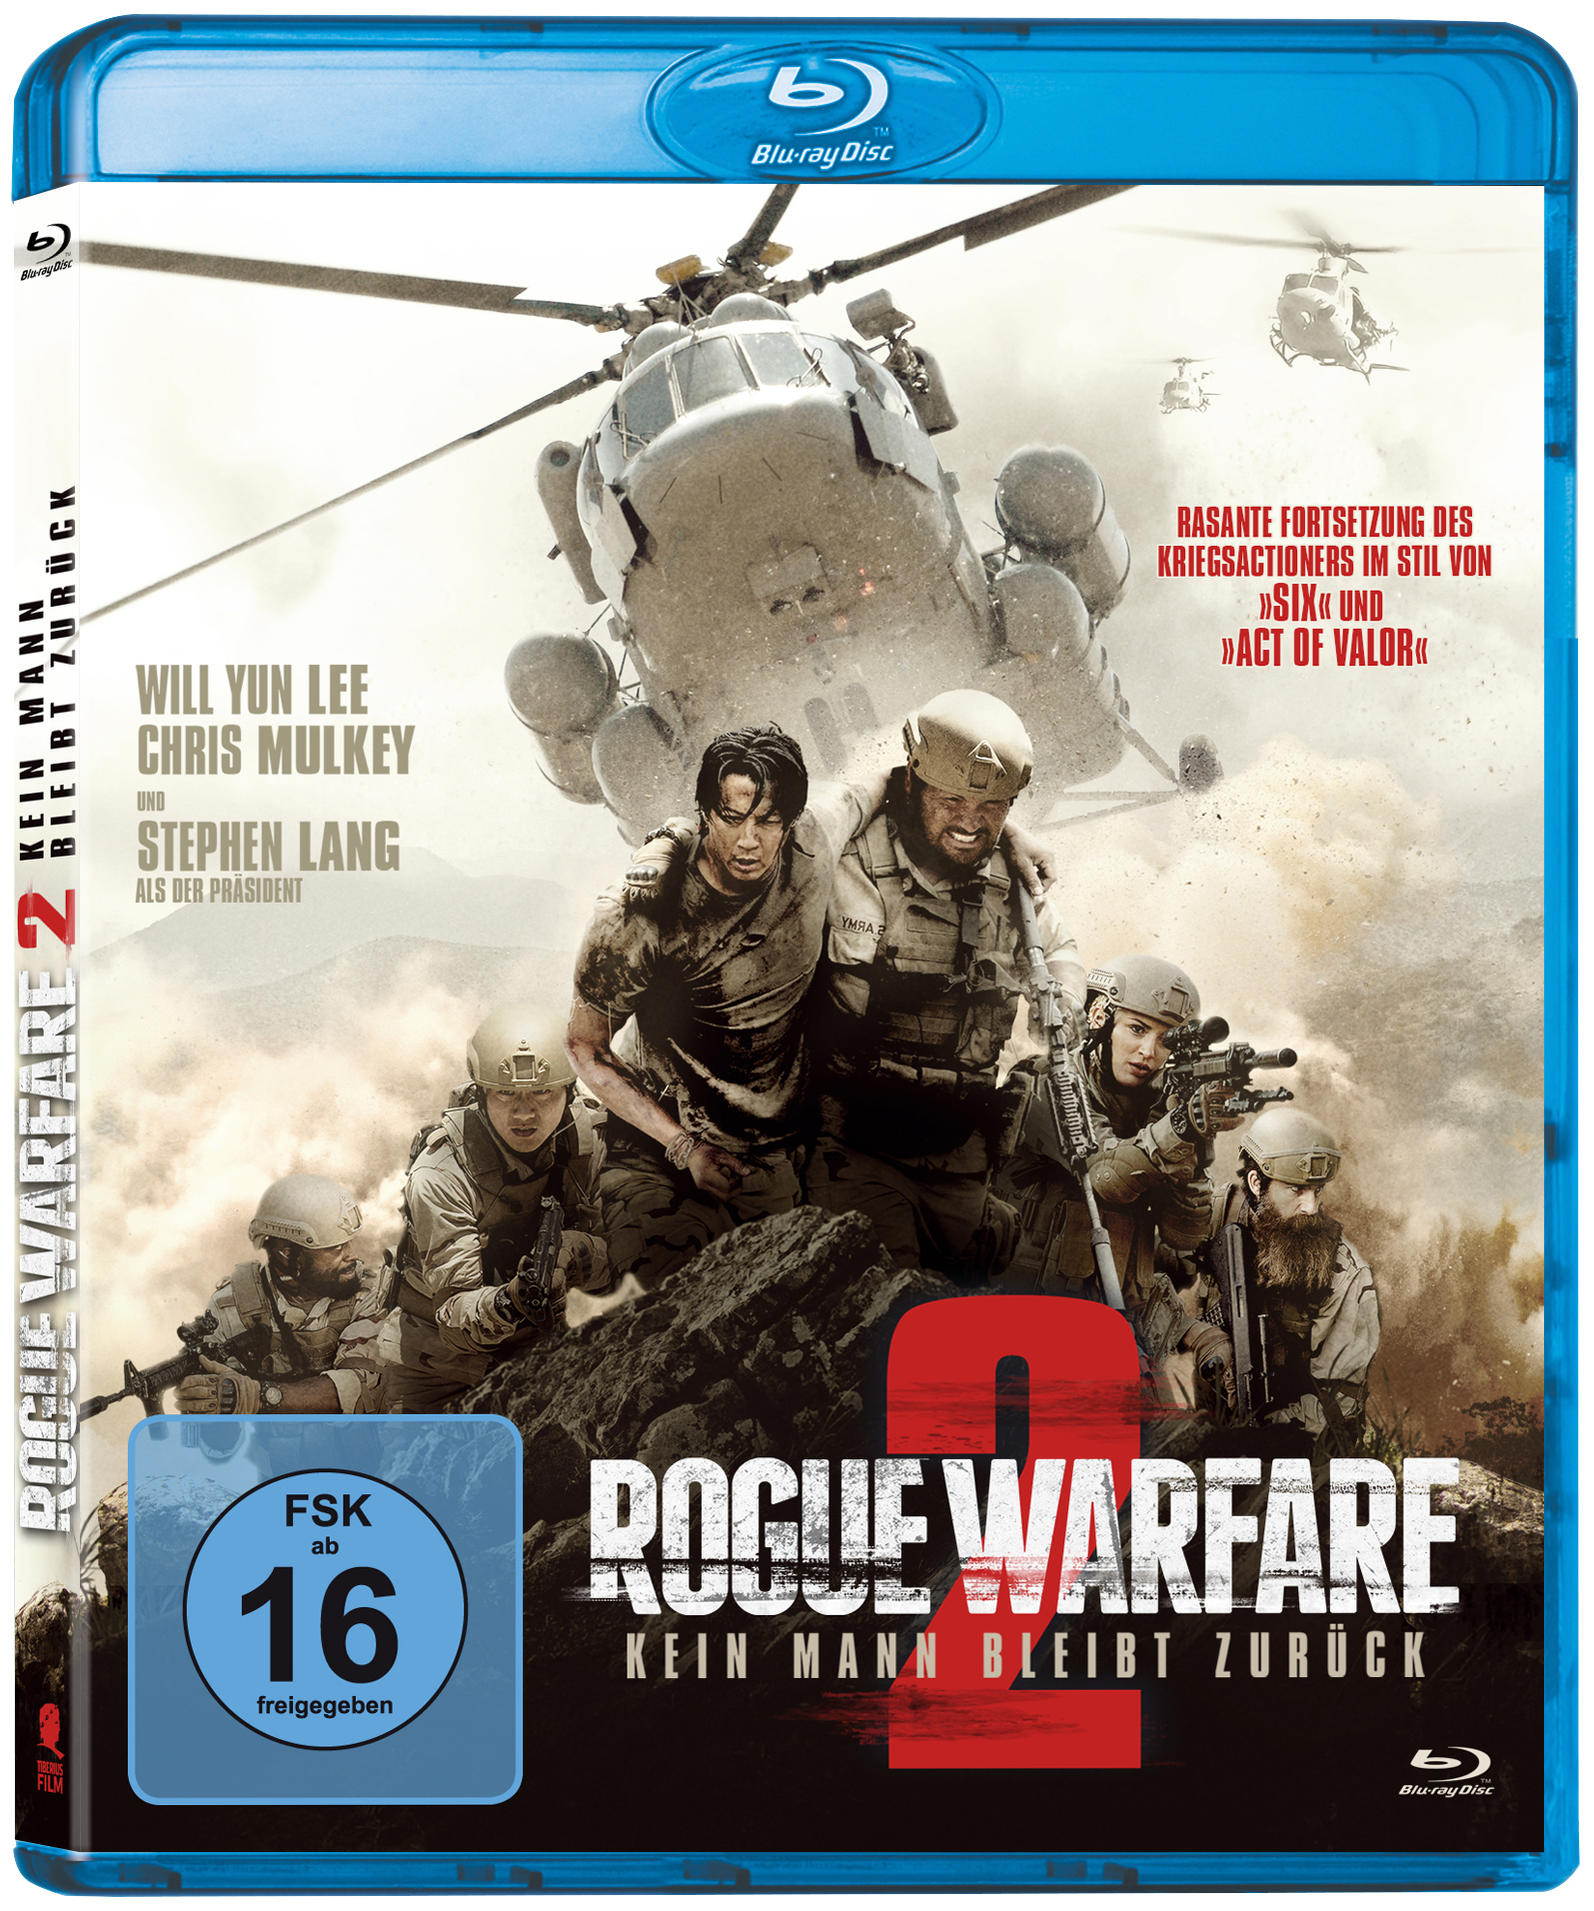 Rogue Warfare 2 - zurück Kein Mann bleibt Blu-ray